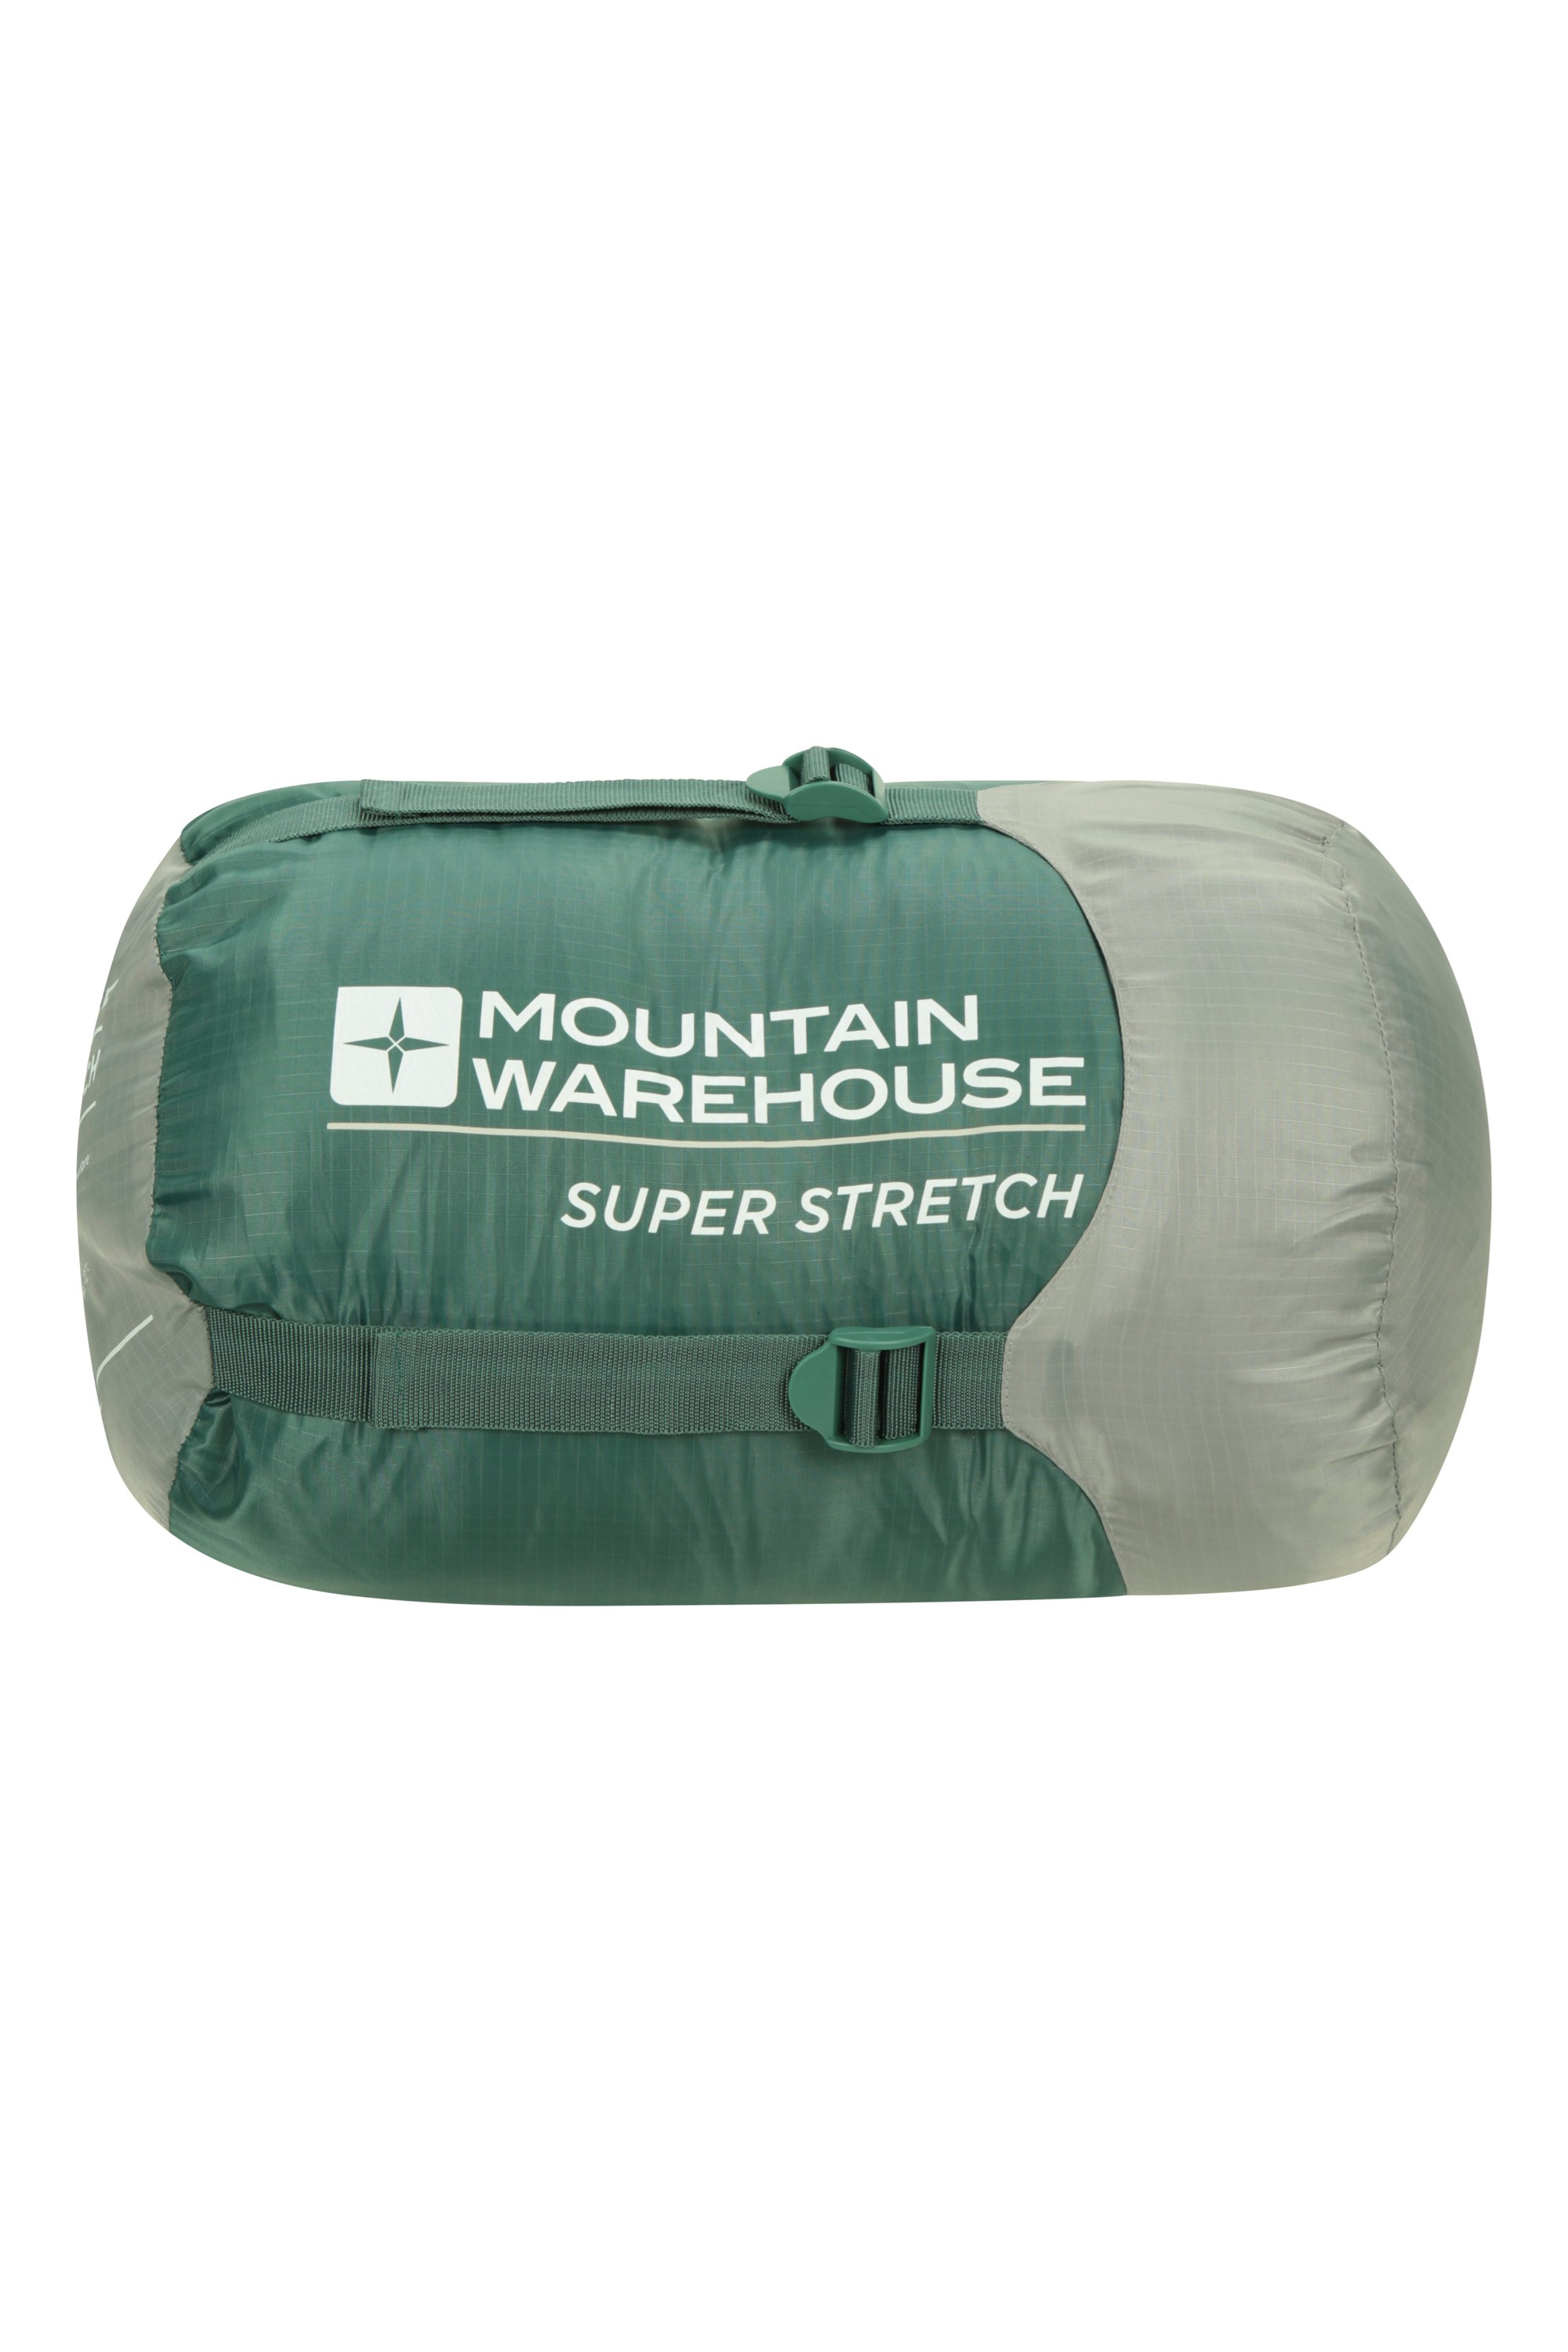 038140 SUPER STRETCH SLEEPING BAG